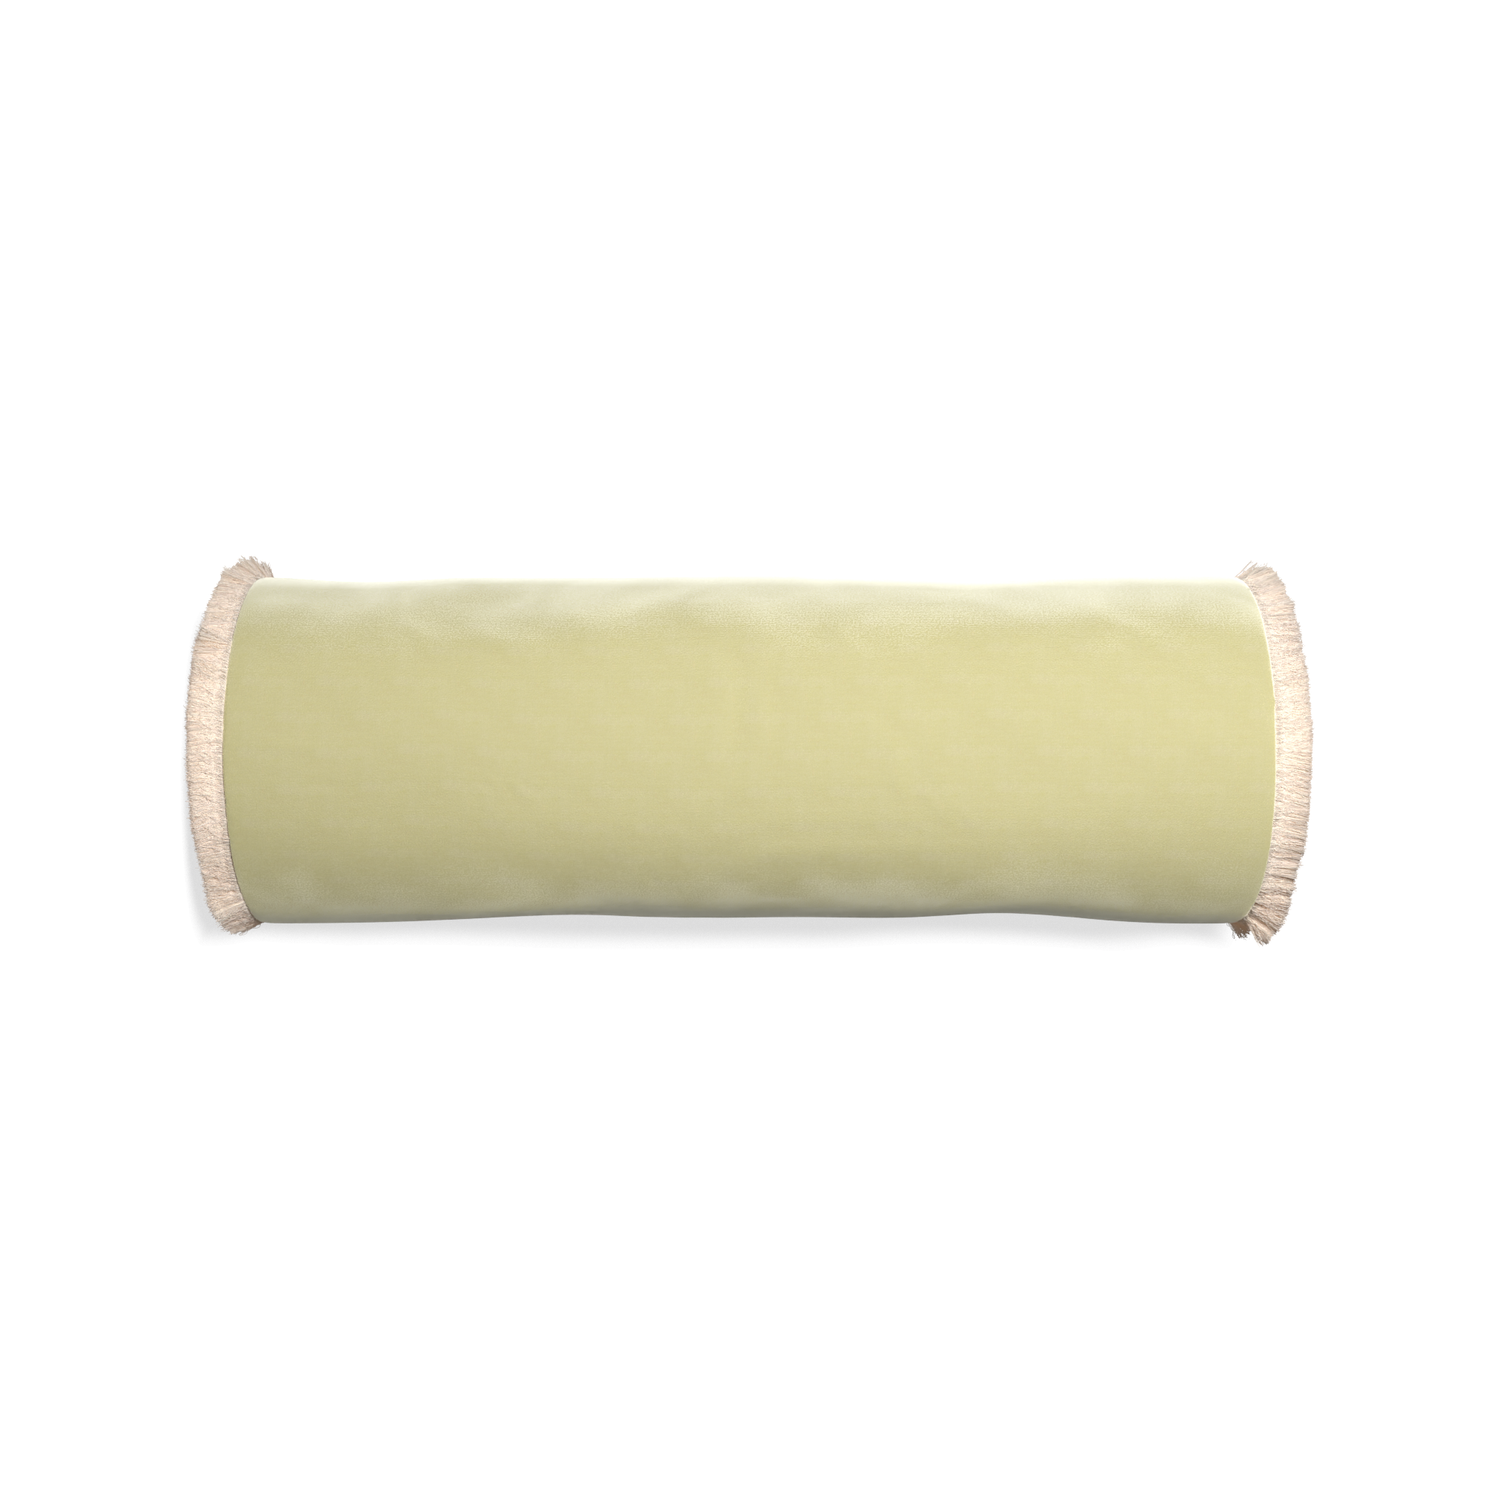 Bolster pear velvet custom pillow with cream fringe on white background